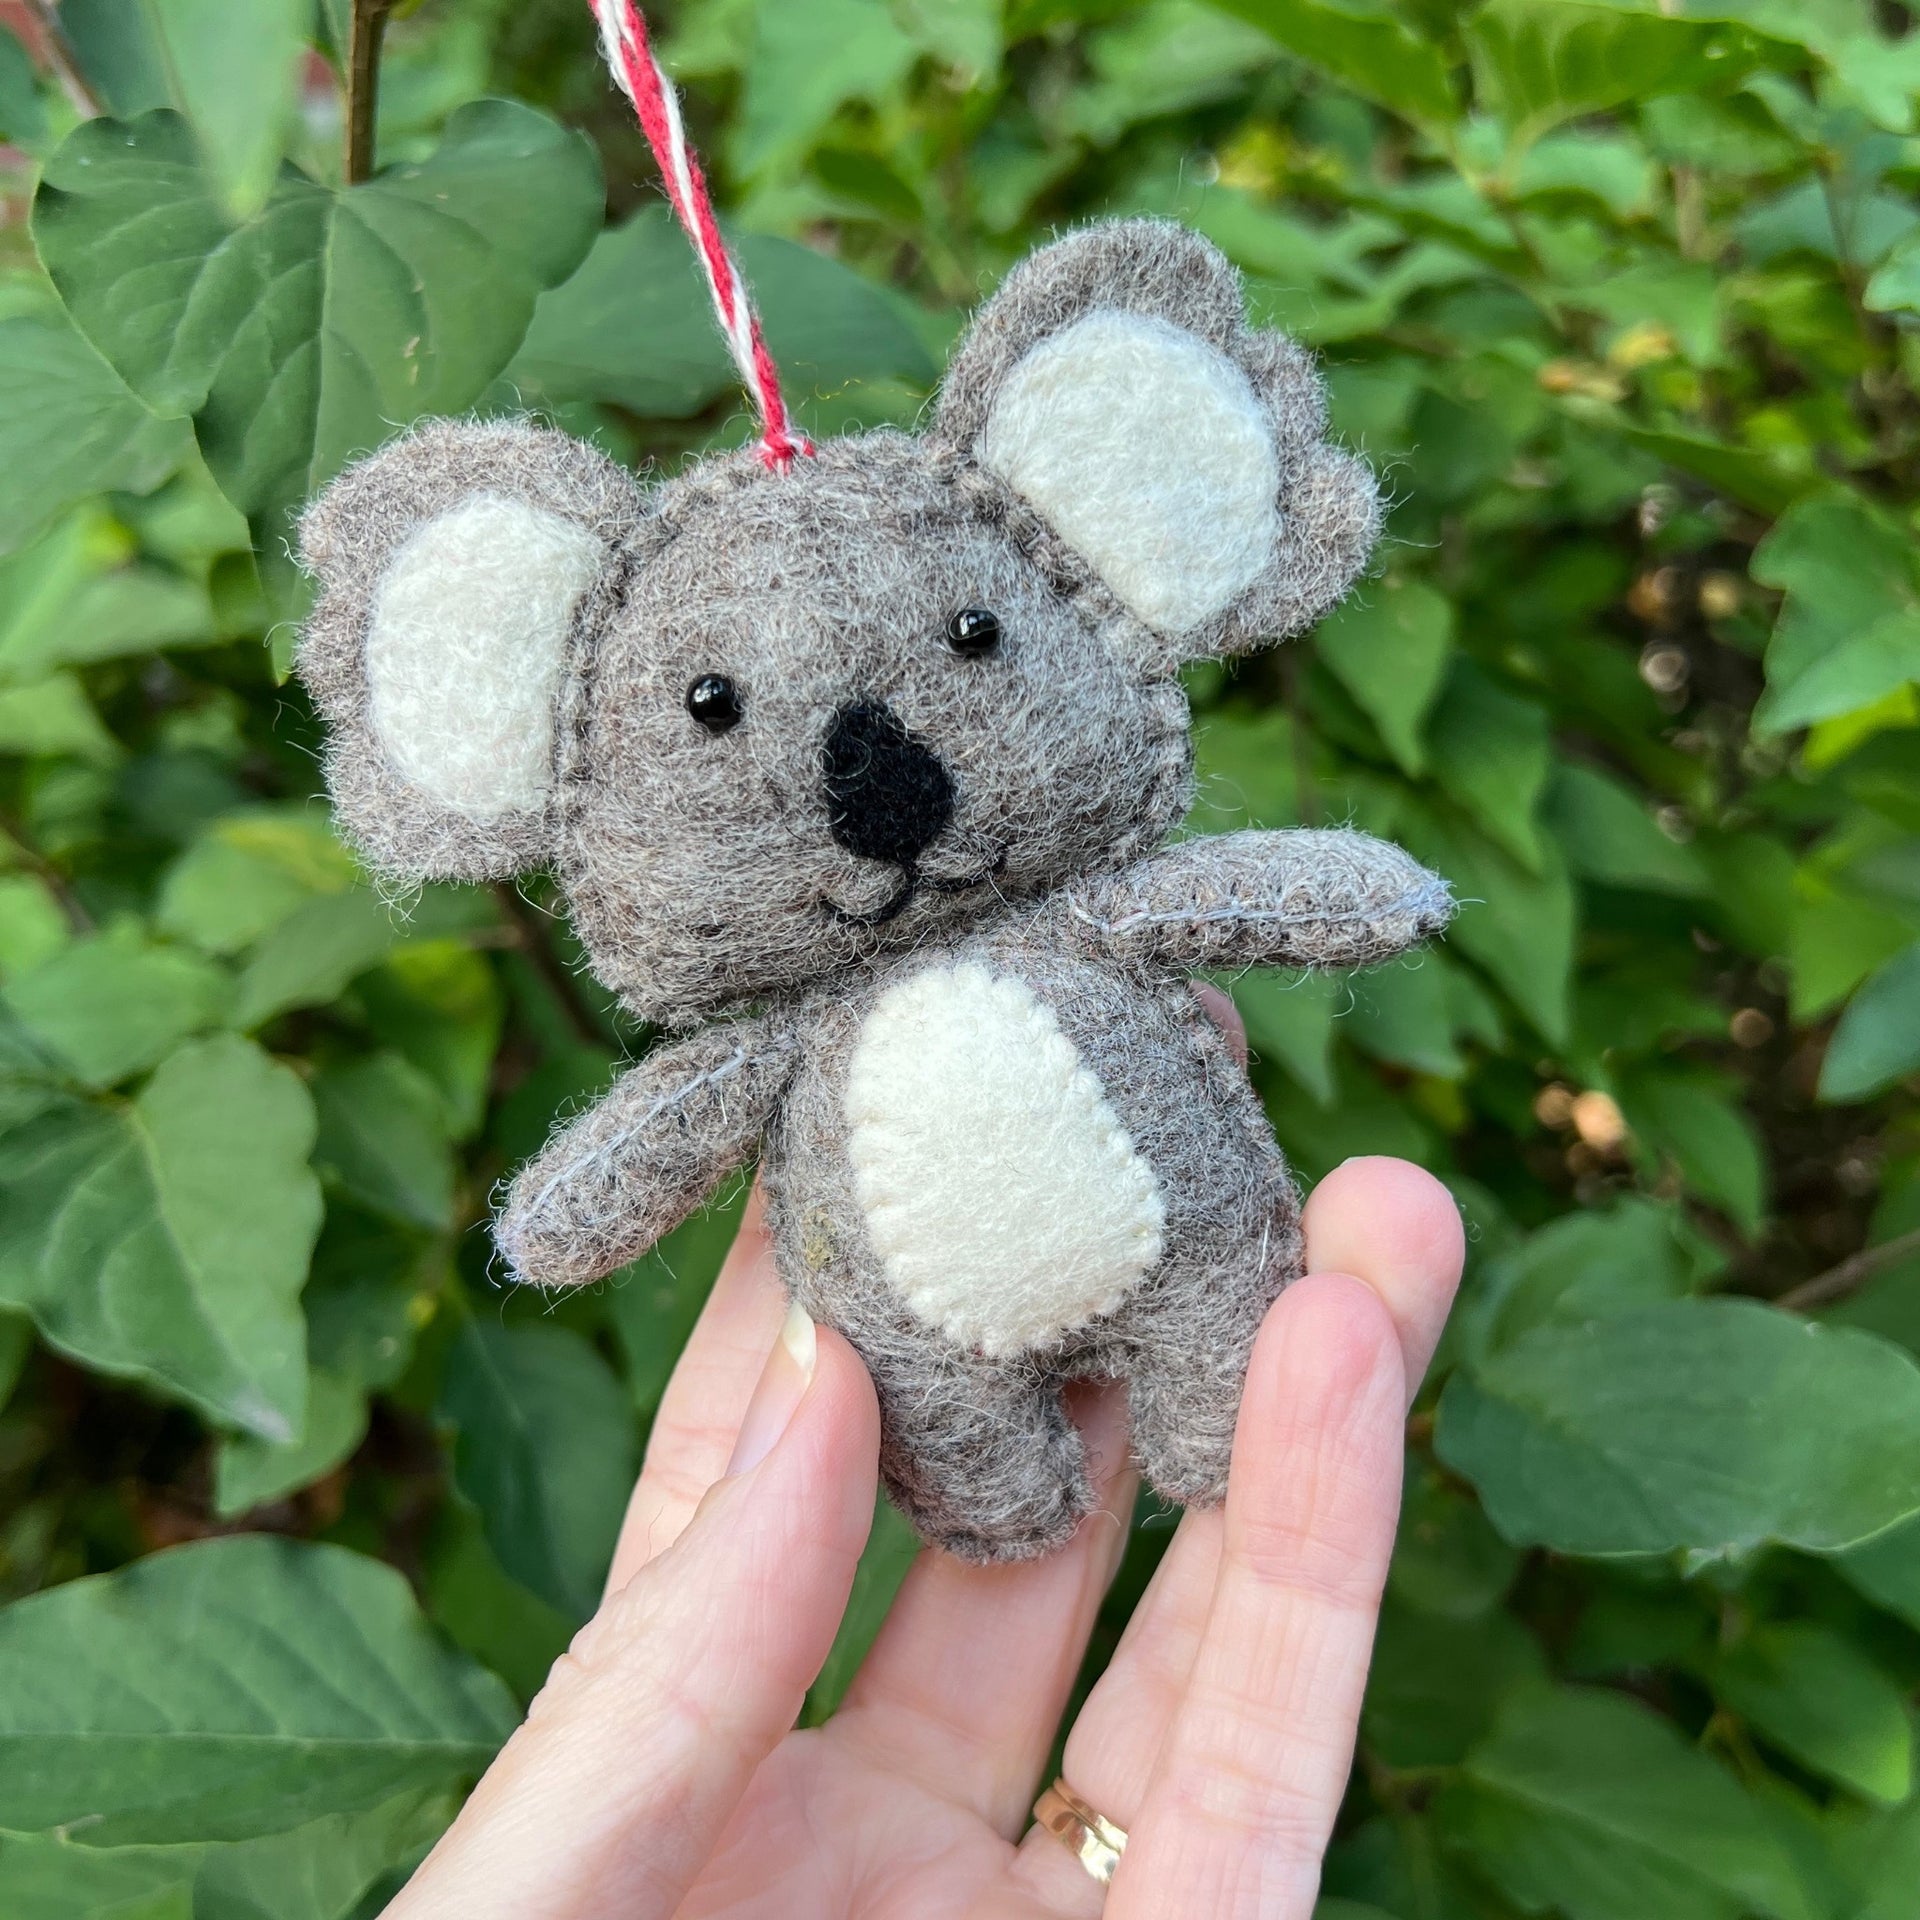 holding a koala ornament